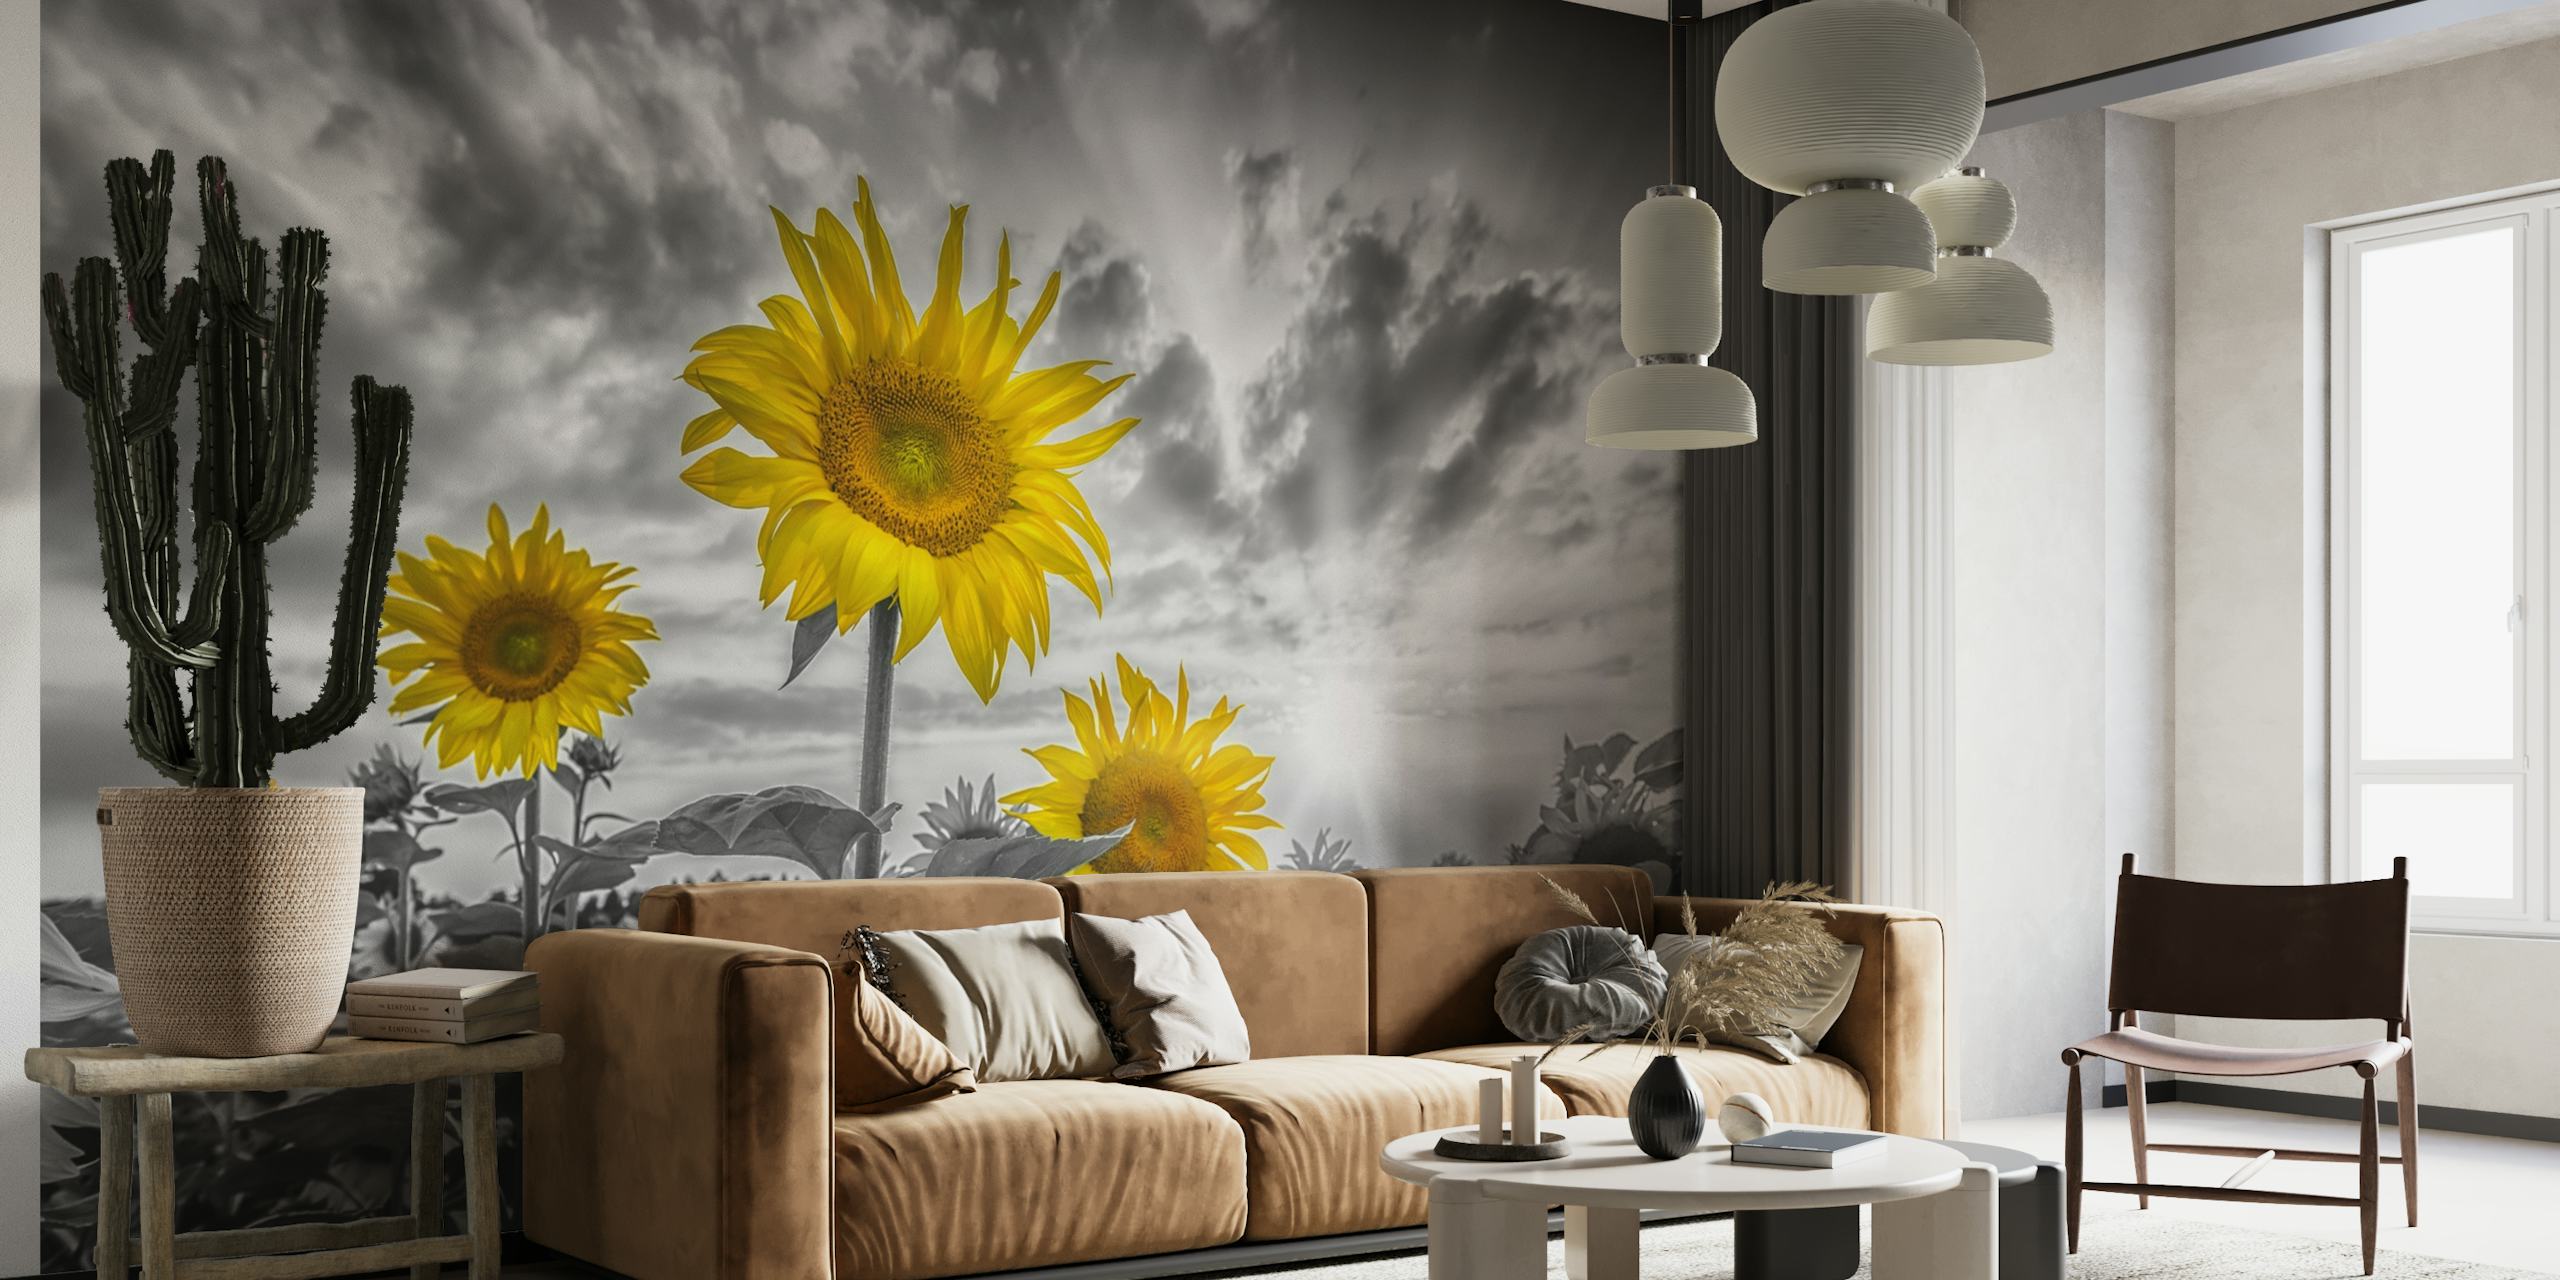 Color pop sunflowers in sunset papel de parede